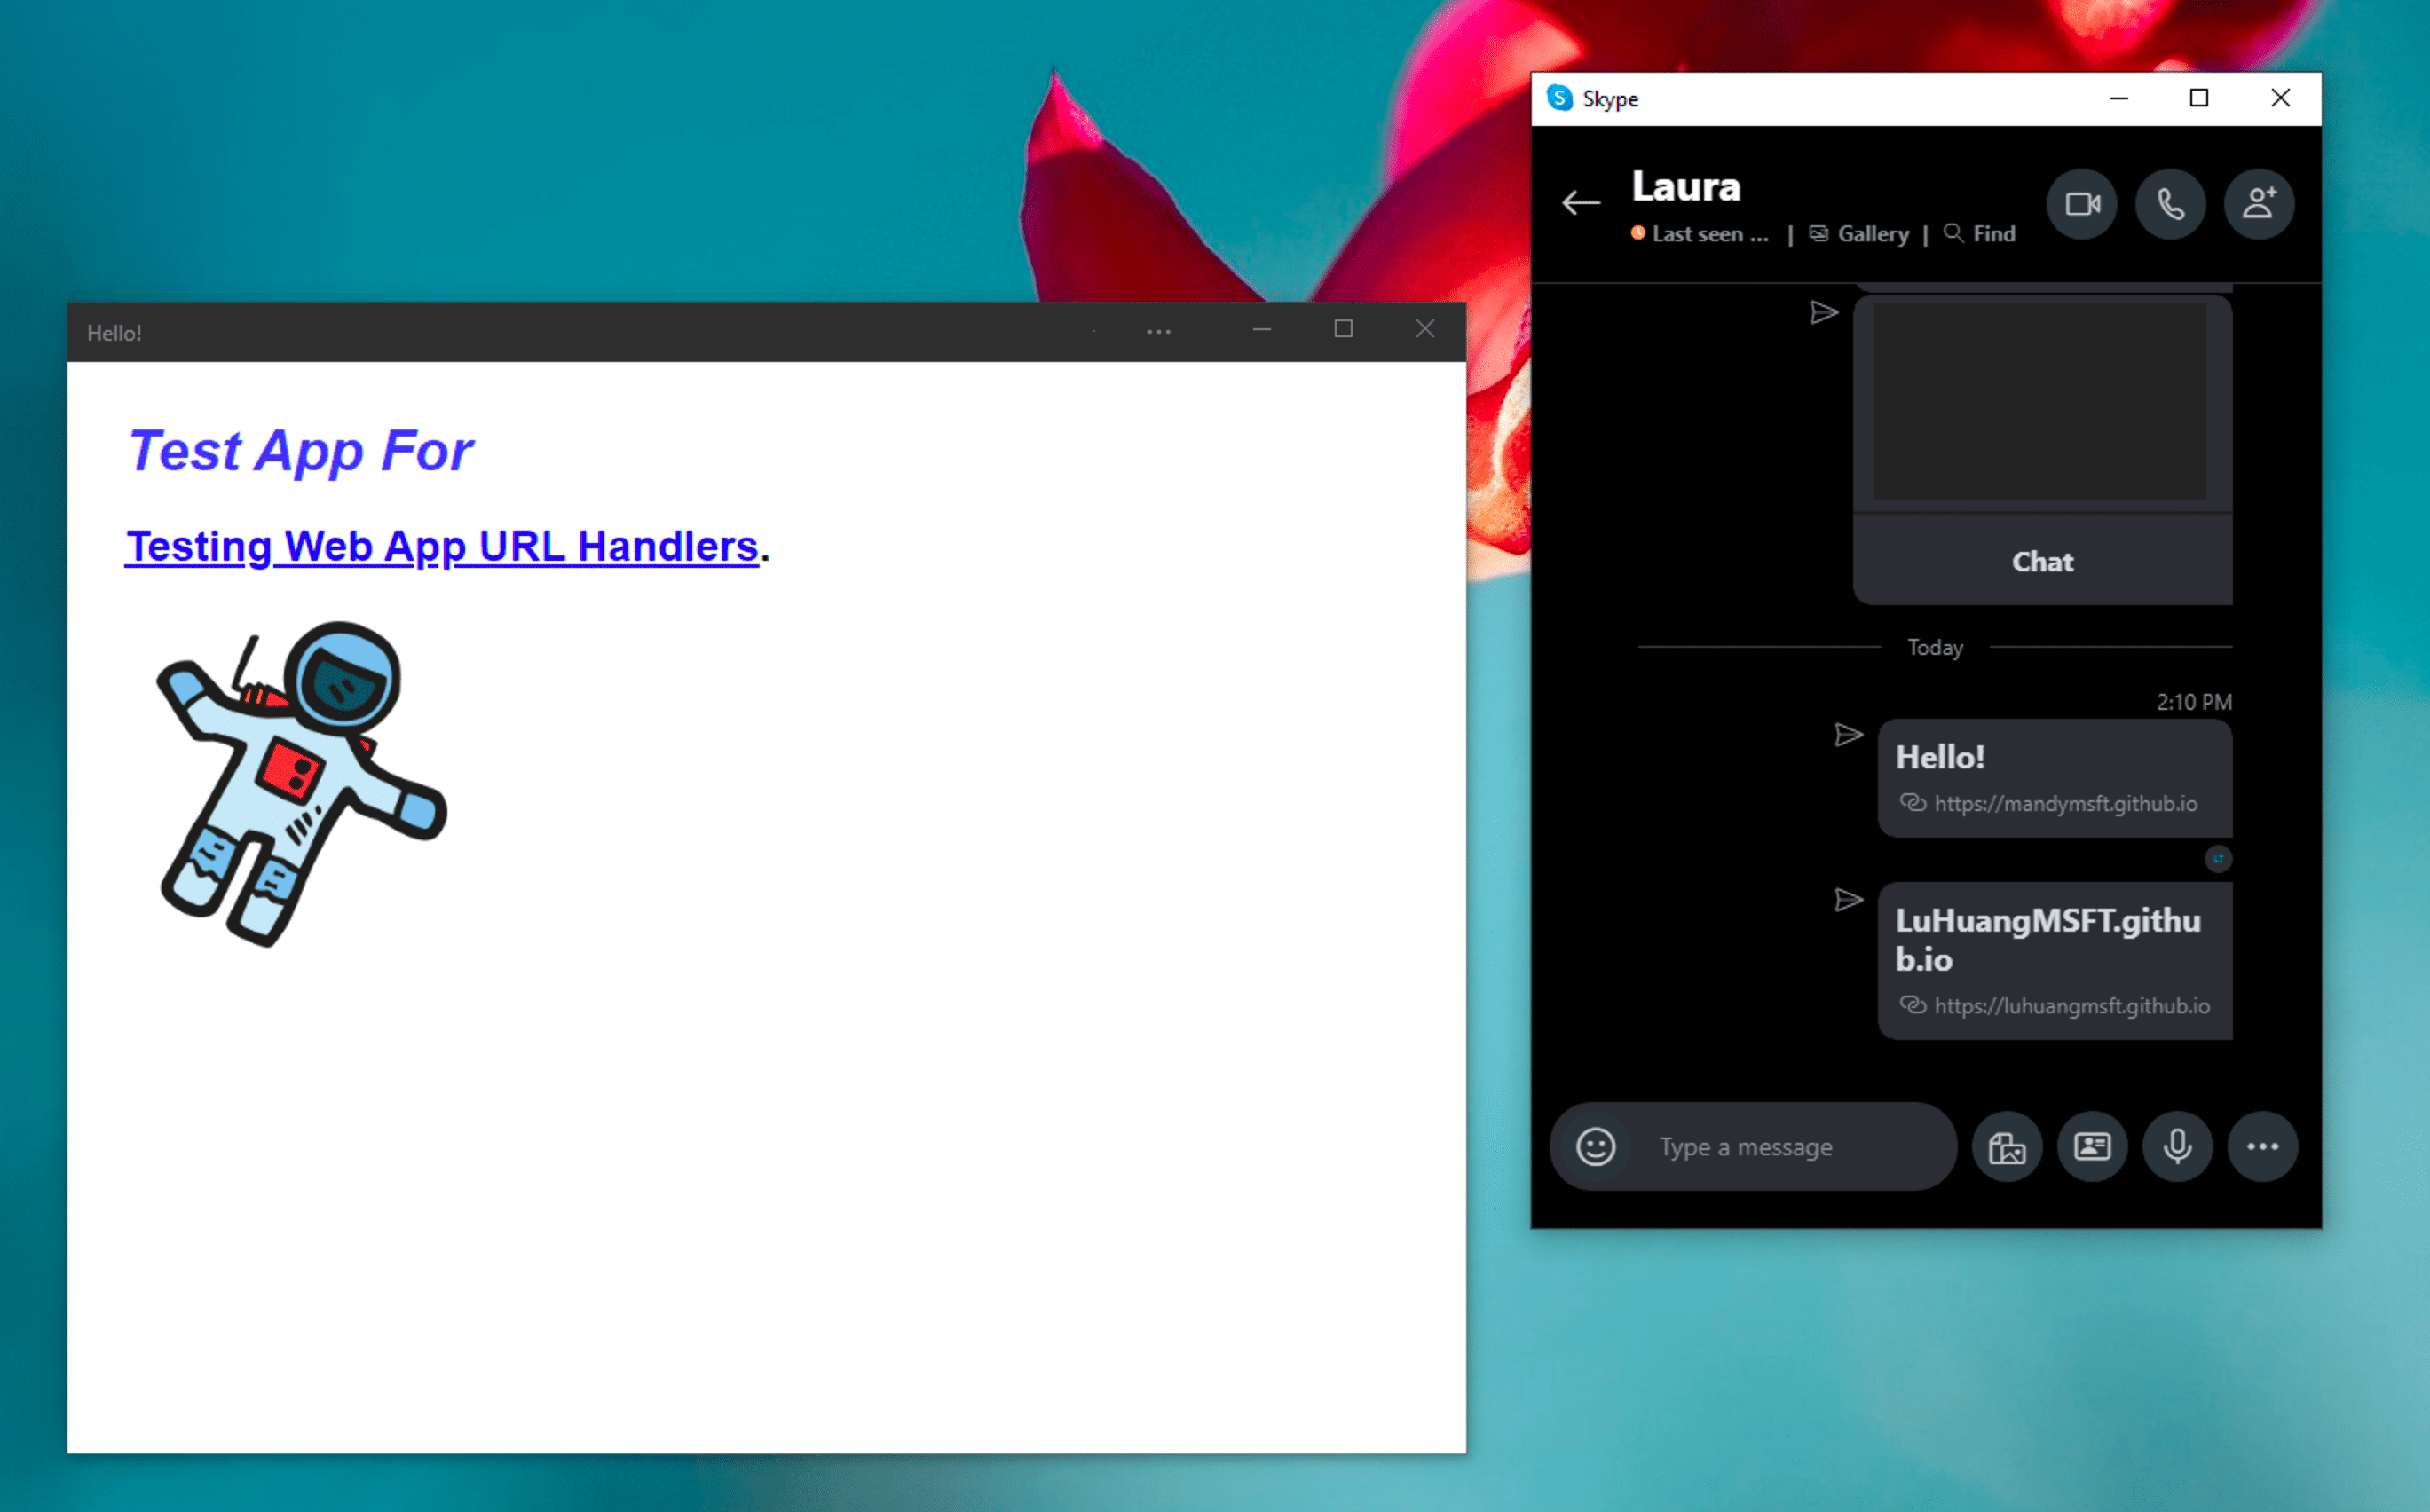 已安装的演示 PWA 旁边的 Windows Skype 即时通讯应用，在 Skype 聊天消息中点击其处理的链接后，会以独立模式打开。